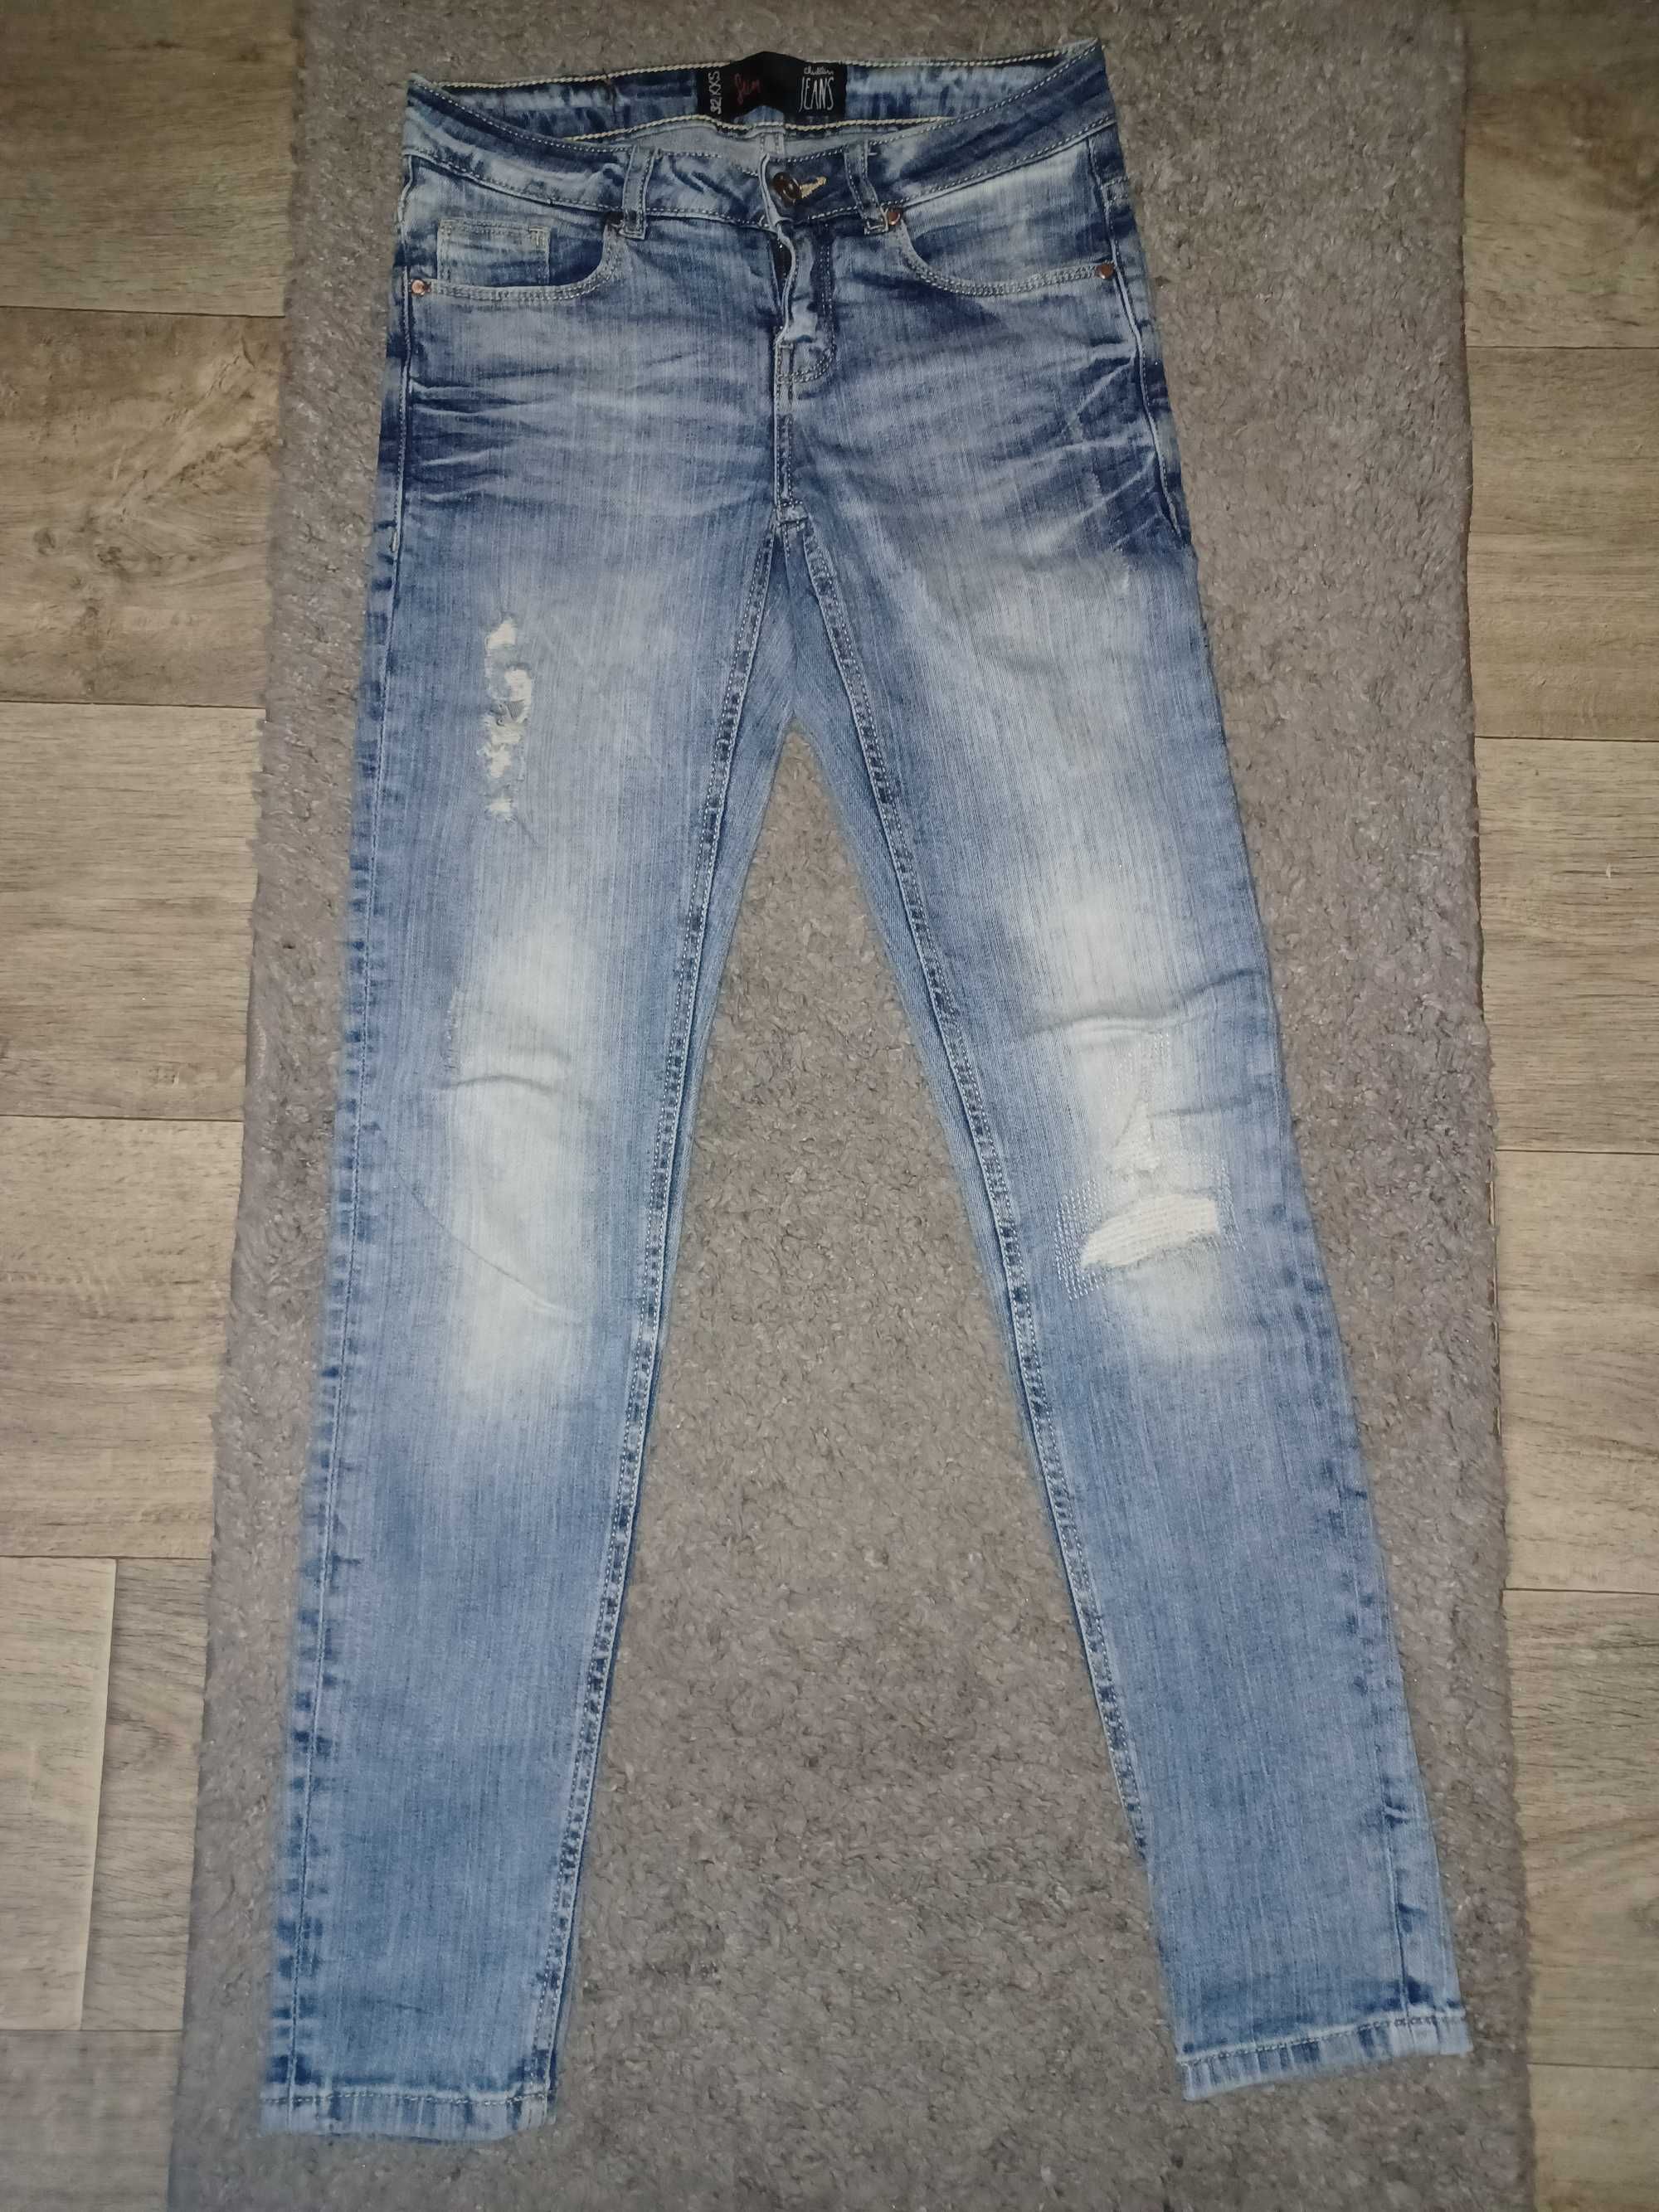 Spodnie jeans PIĘKNE rozmiar 158/164 cena za całość 6 sztuk